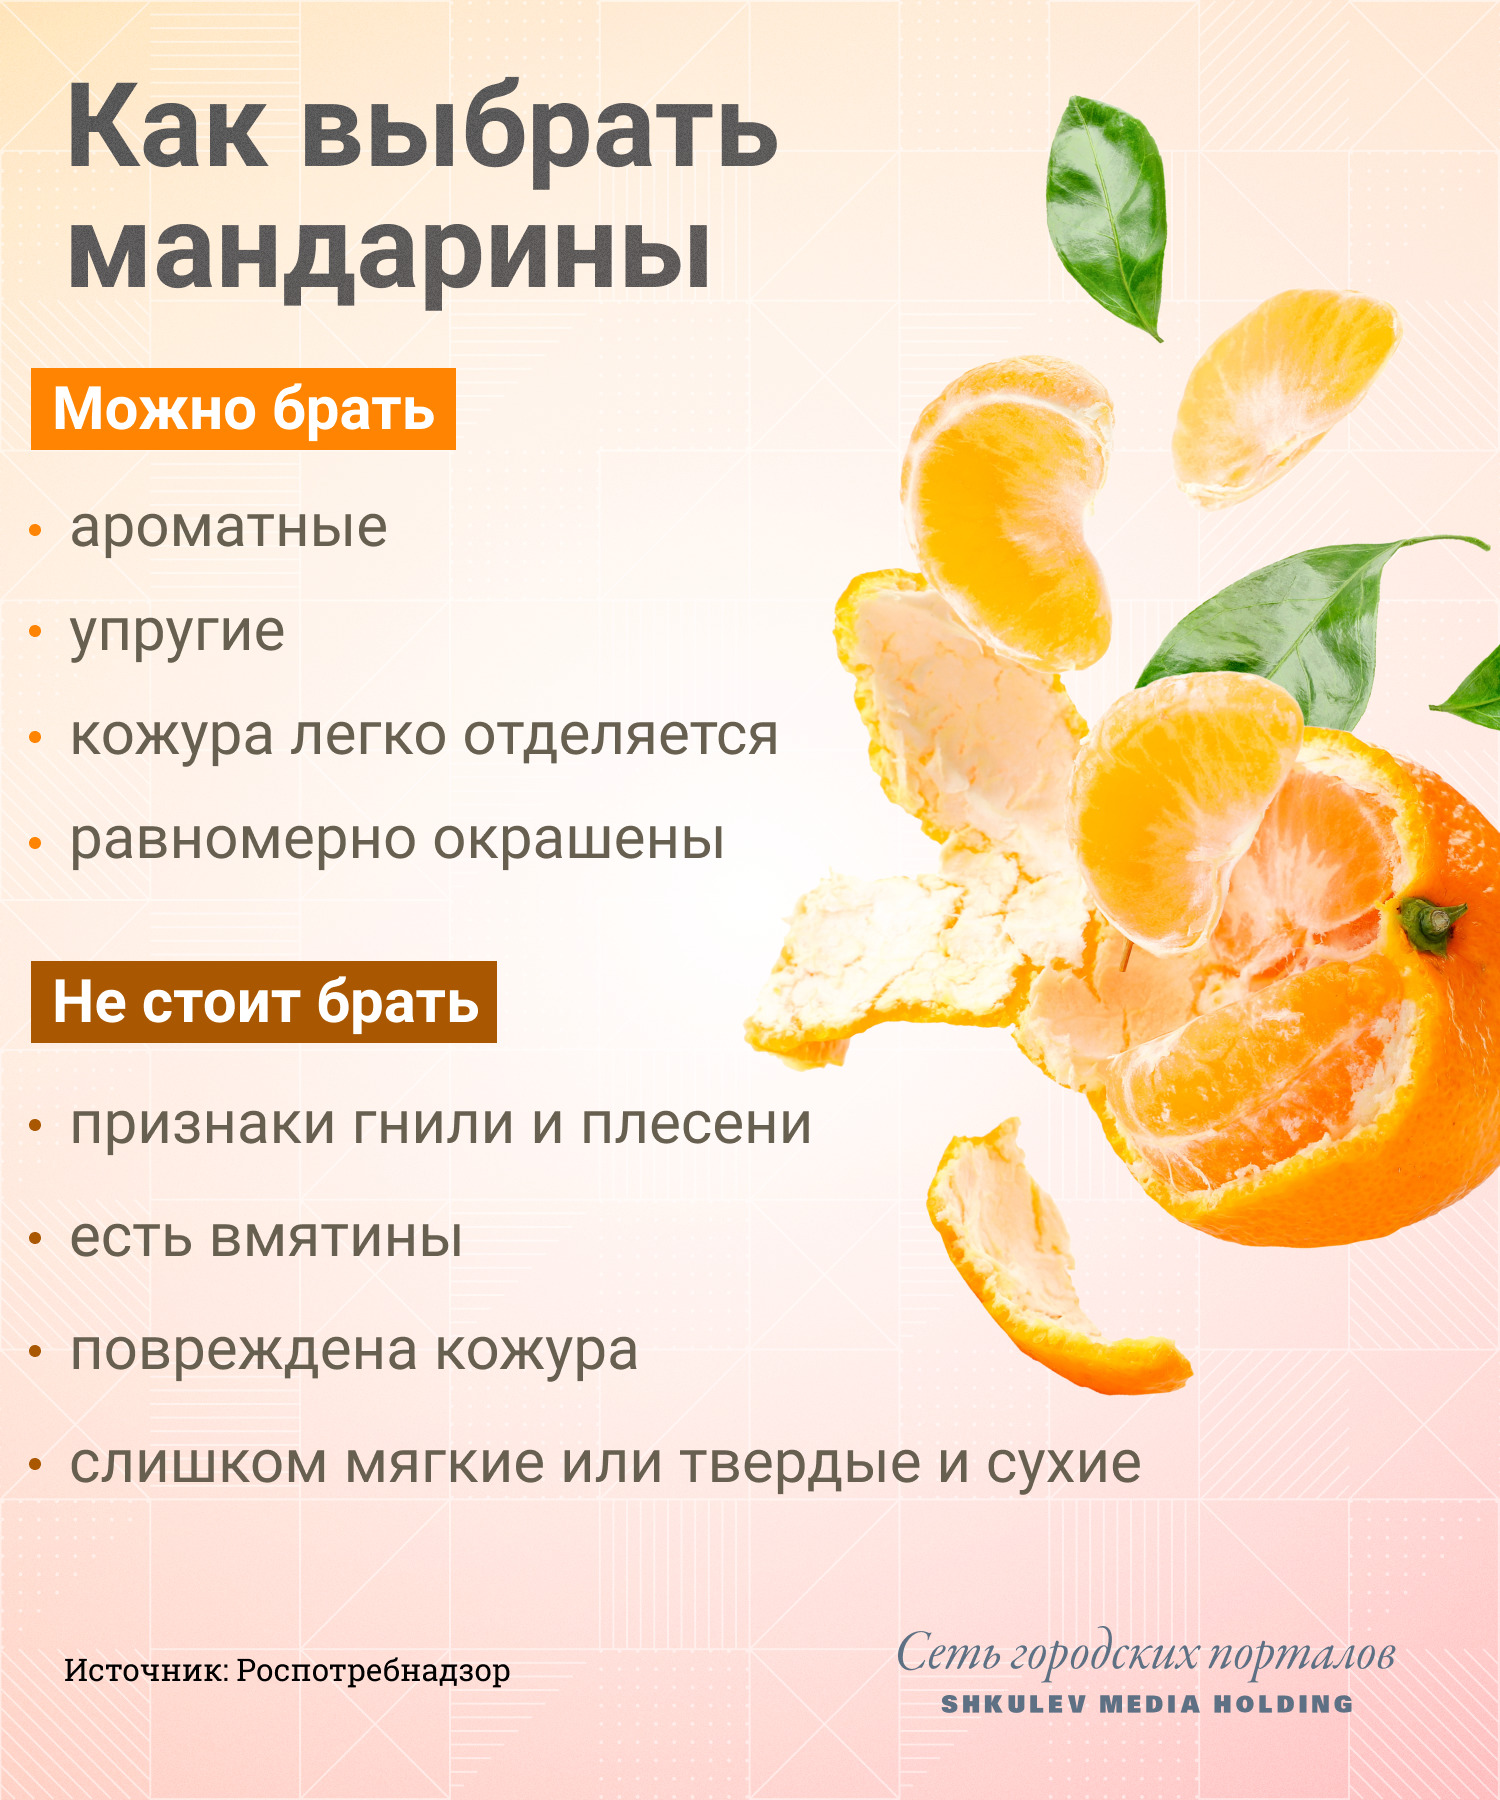 Что будет, если съесть слишком много мандаринов? Отвечает врач мандарины, мандаринов, стоит, много, мандаринах, говорит, Девяткина, реакцию, Поэтому, фрукты, слишком, цитрусовых, больше, может, могут, Елена, аллергии, перед, польза, также